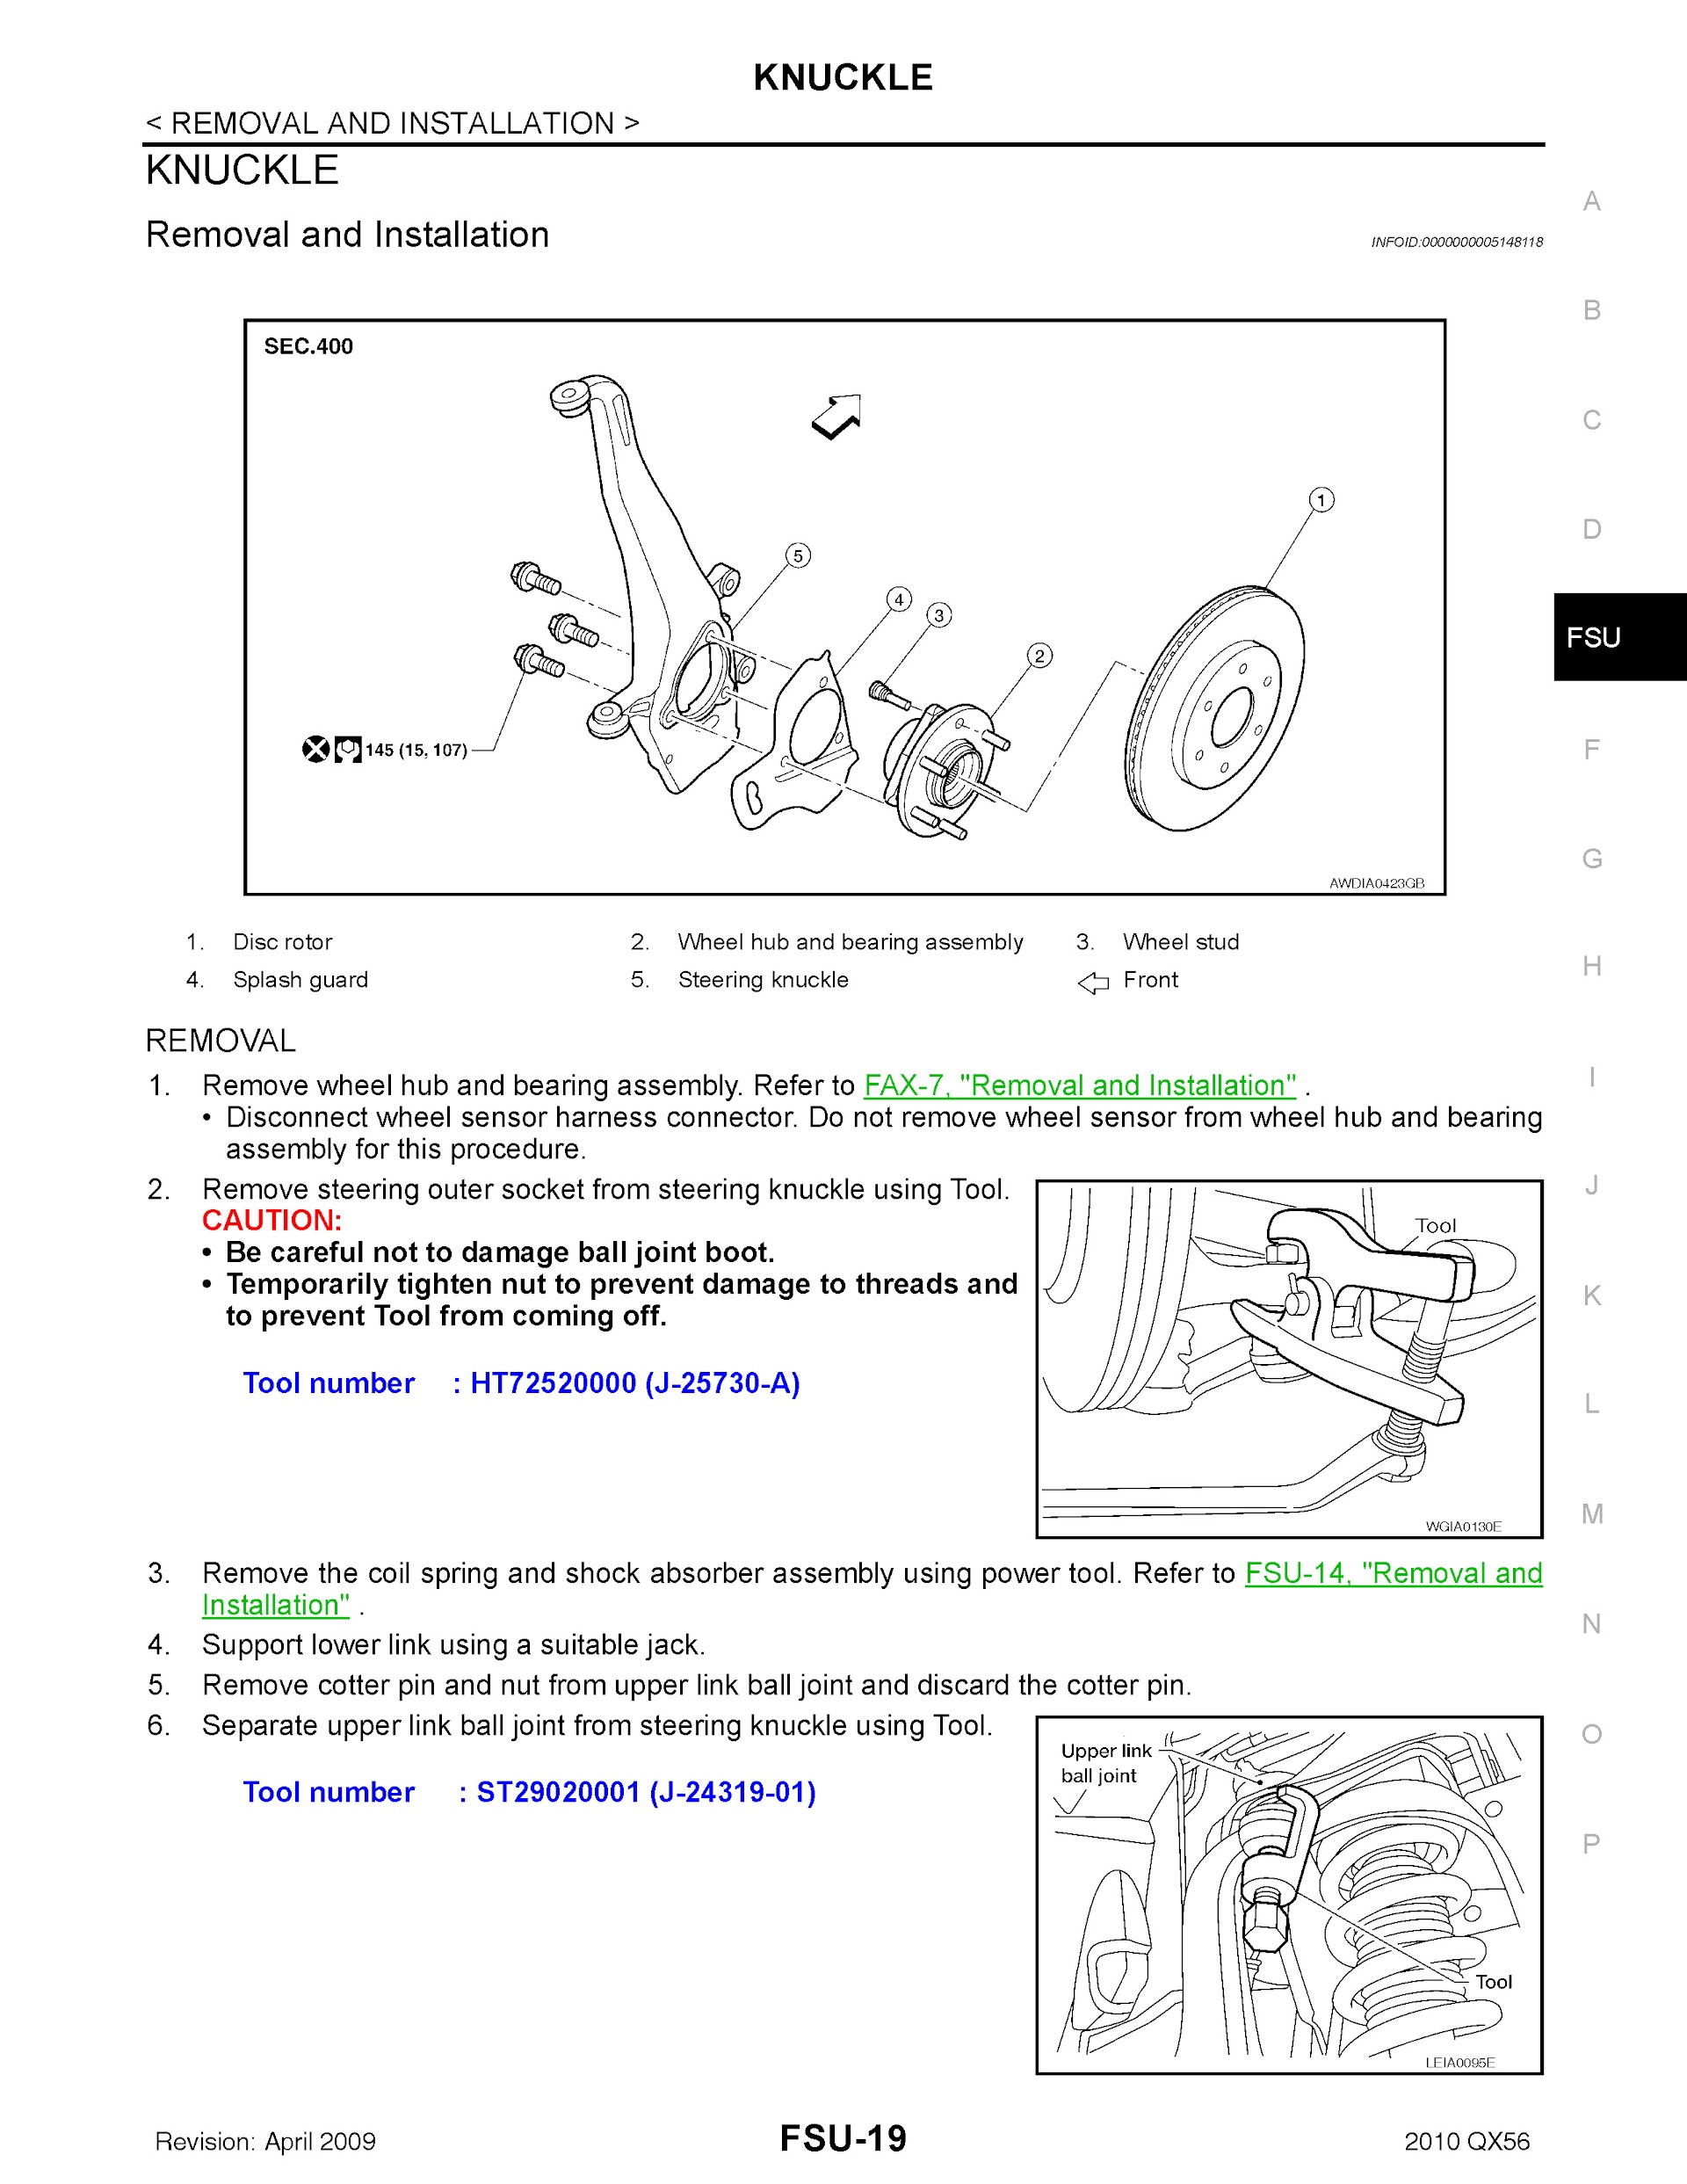 2010 Infiniti QX56 Repair Manual, knuckle